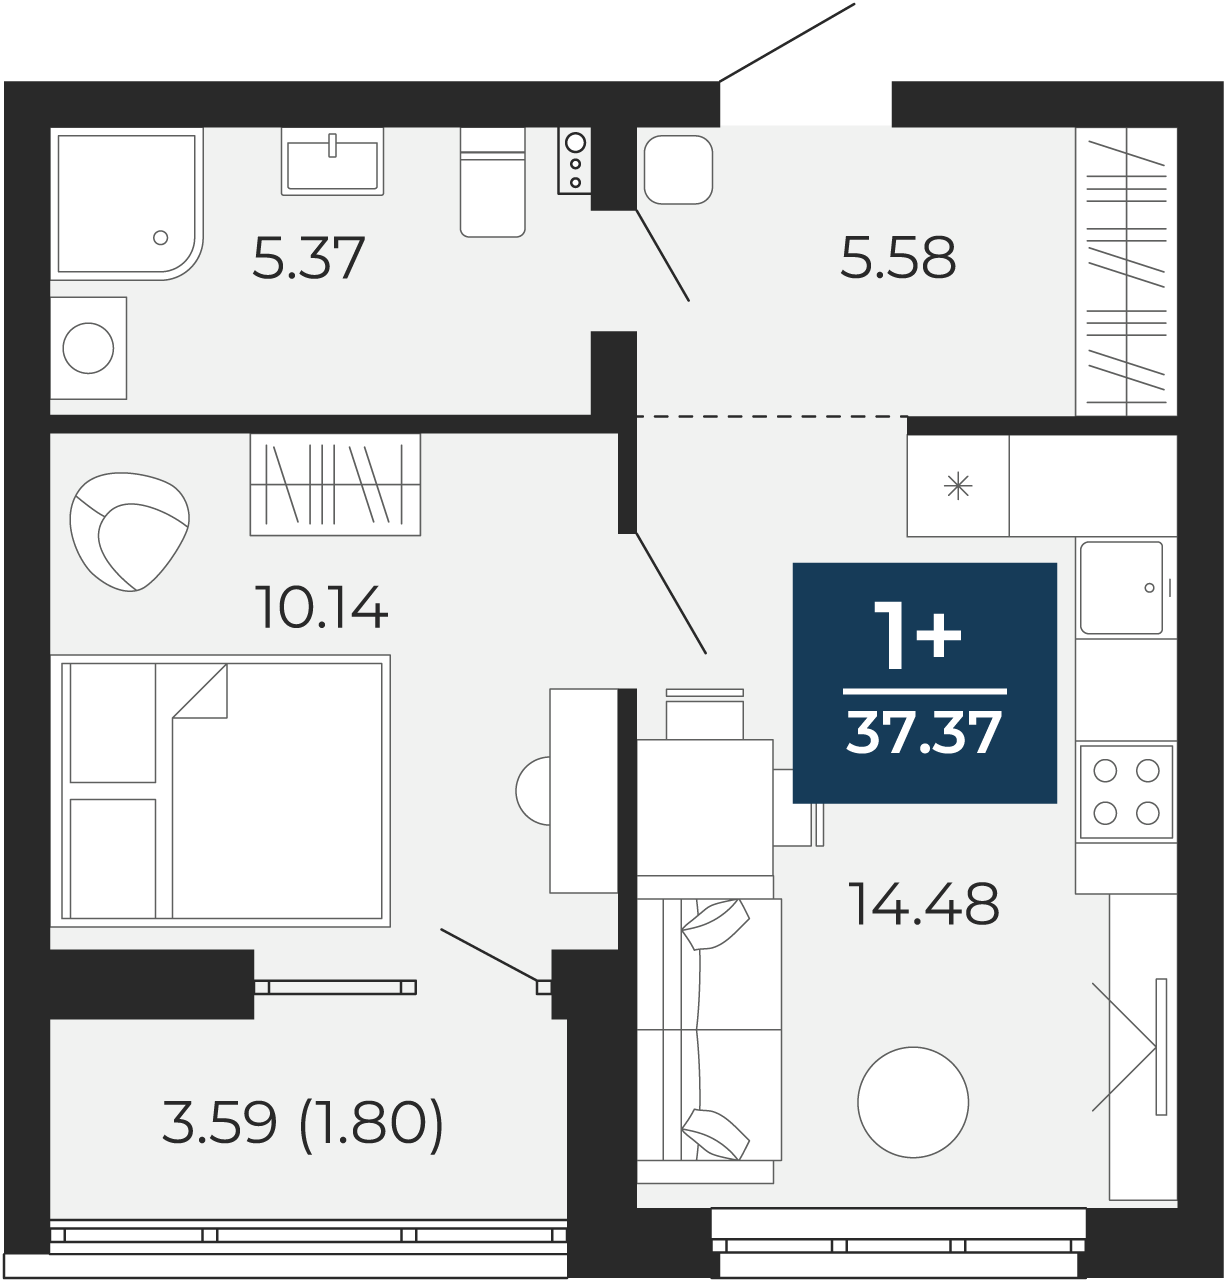 Квартира № 191, 1-комнатная, 37.37 кв. м, 2 этаж